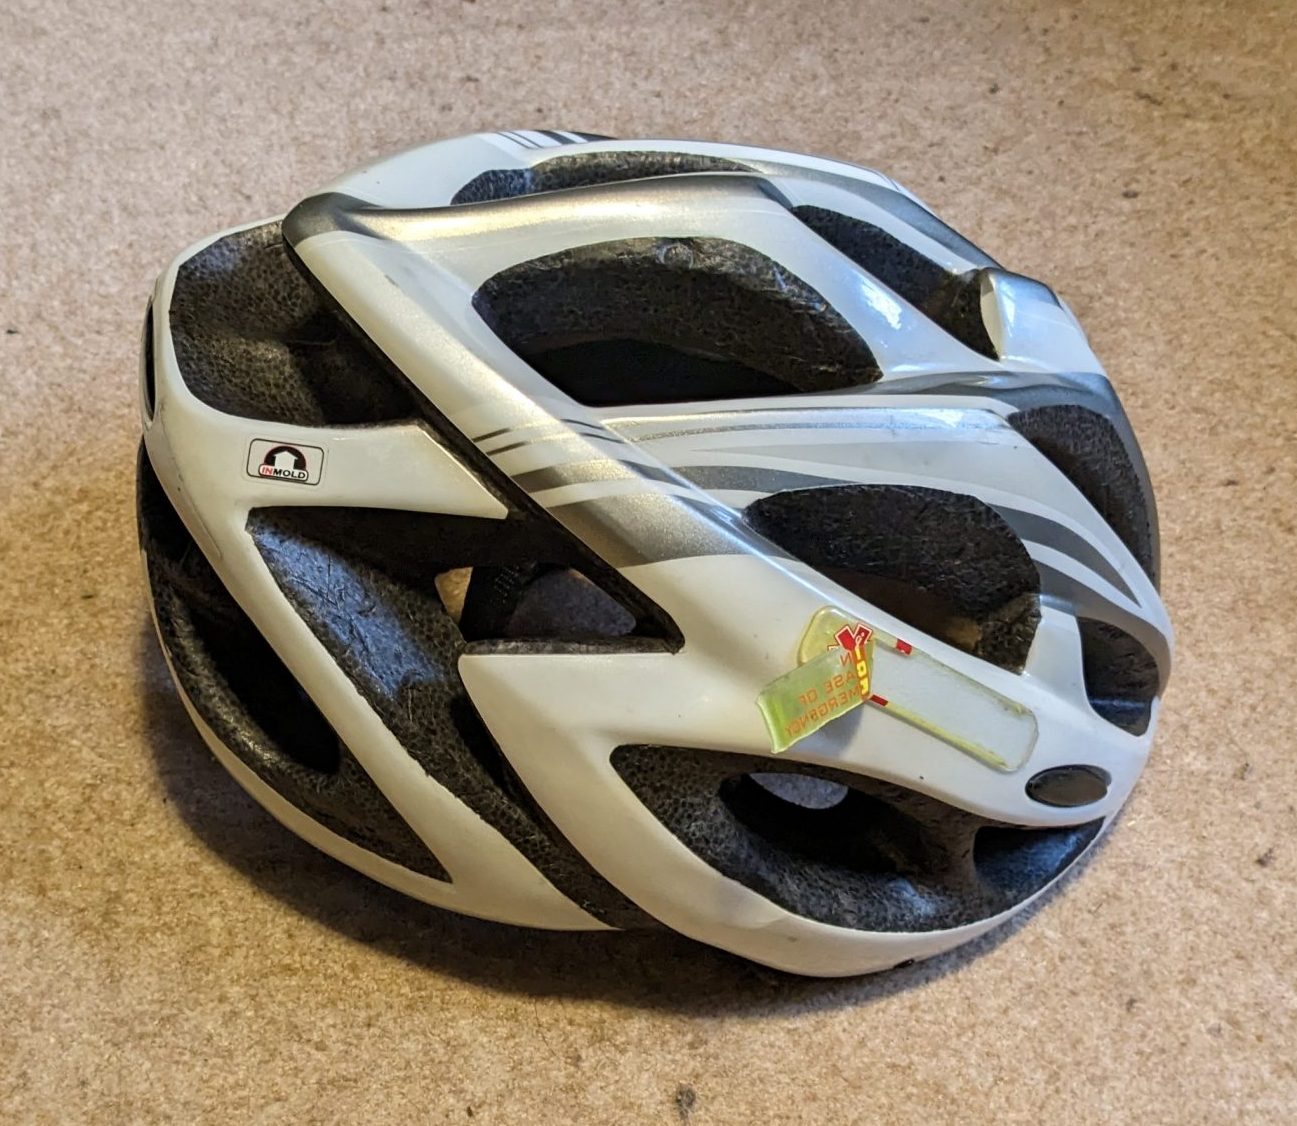 Lost helmet